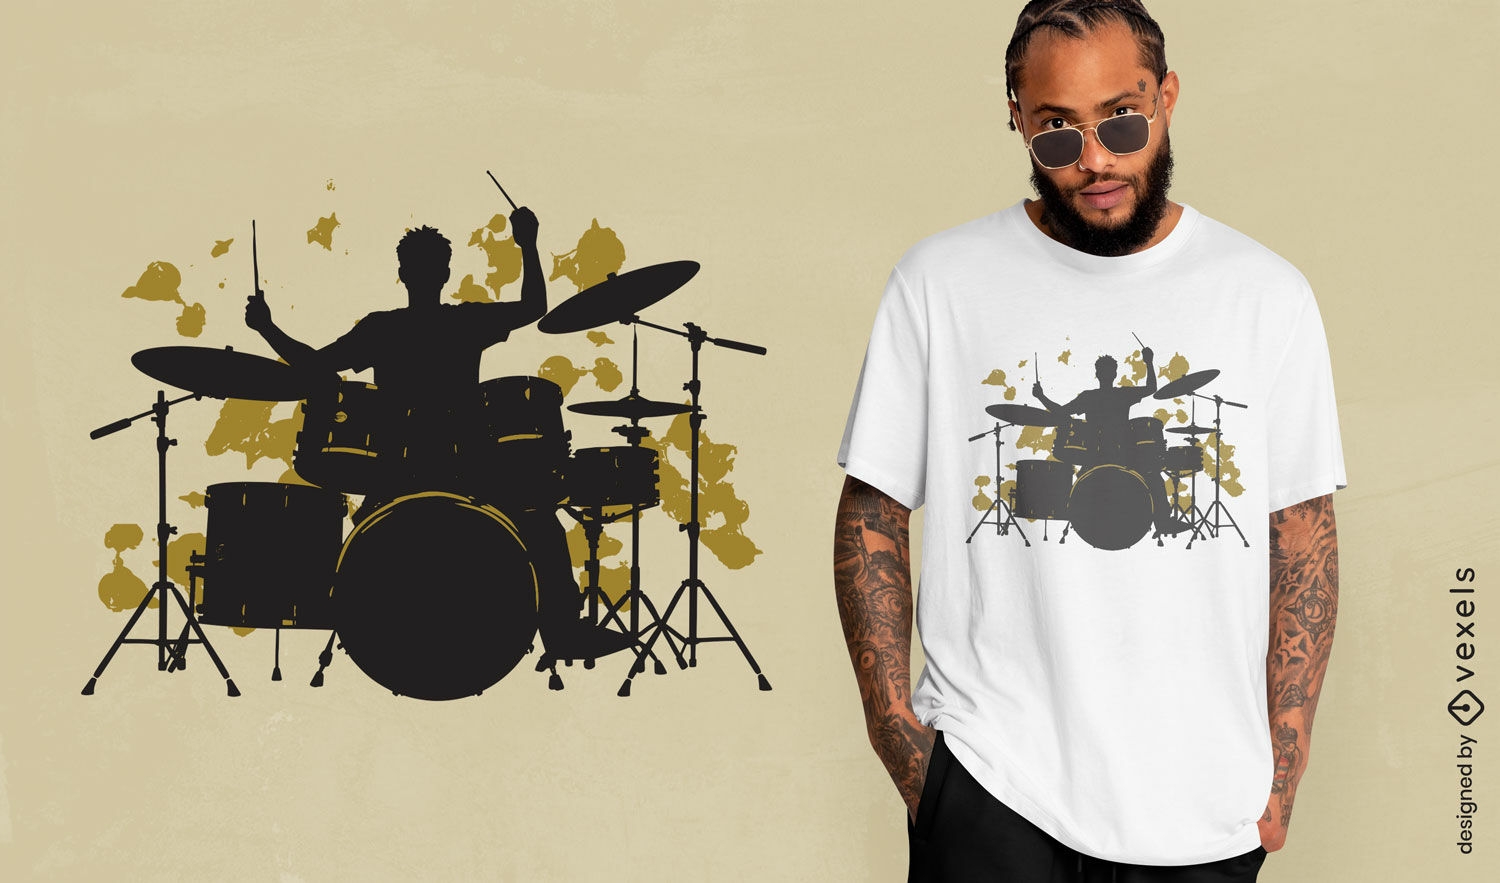 Dise?o de camiseta de silueta de baterista vibrante.